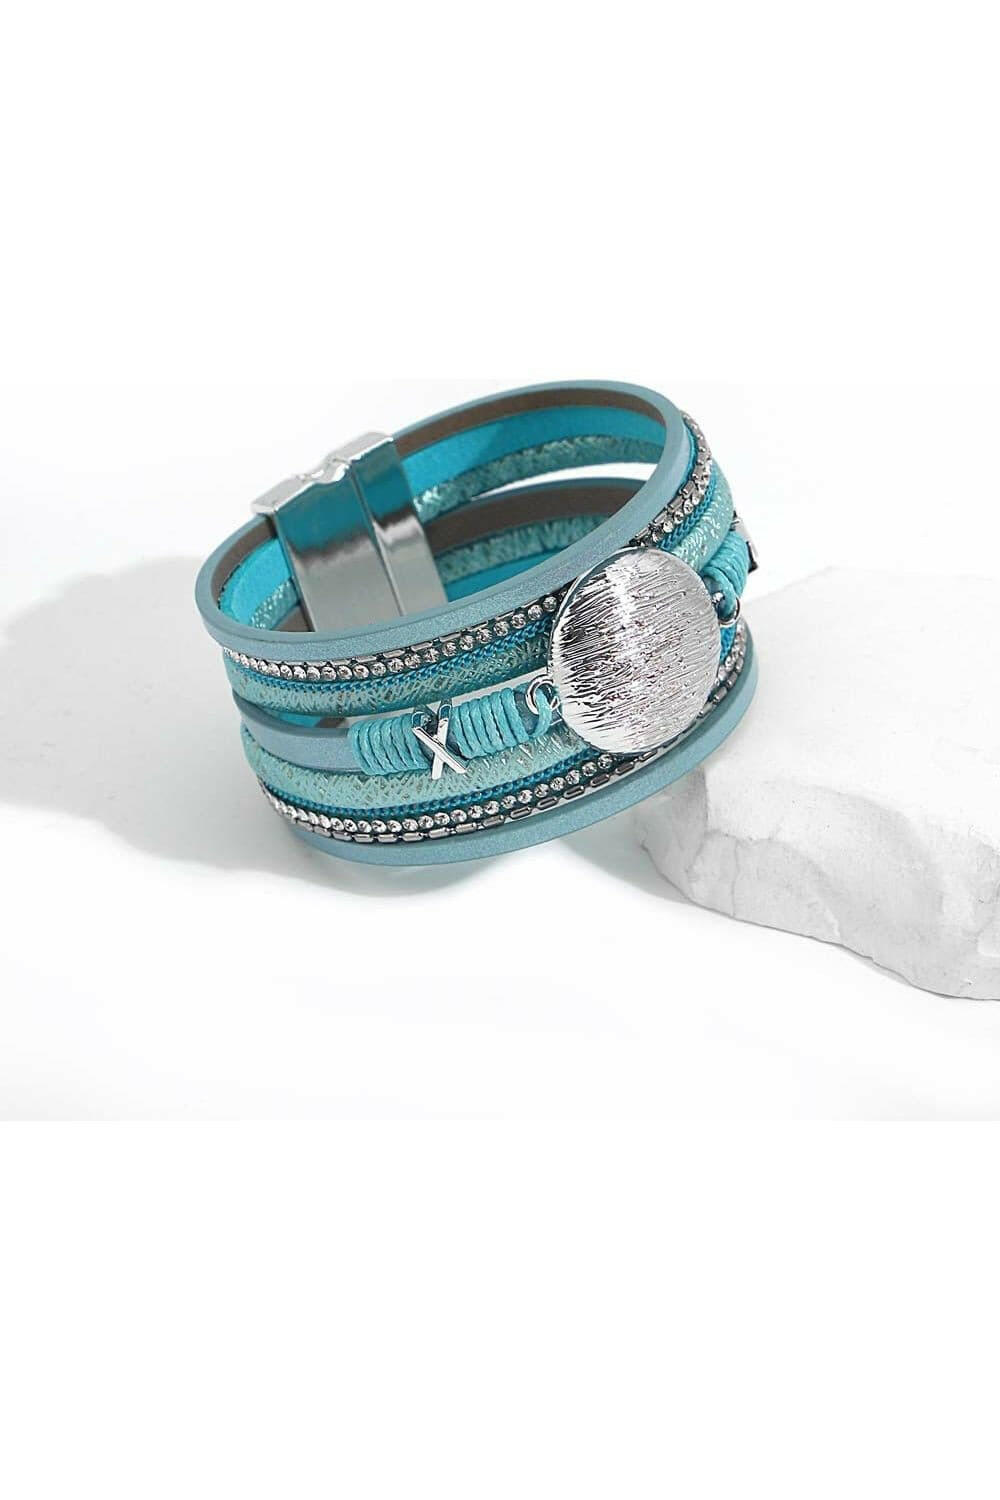 Boho Blue Multilayer Braided Leather Bracelet for Women - Charm Heart Cross Evil Eye Pearl Wrap Bracelets - By Baano